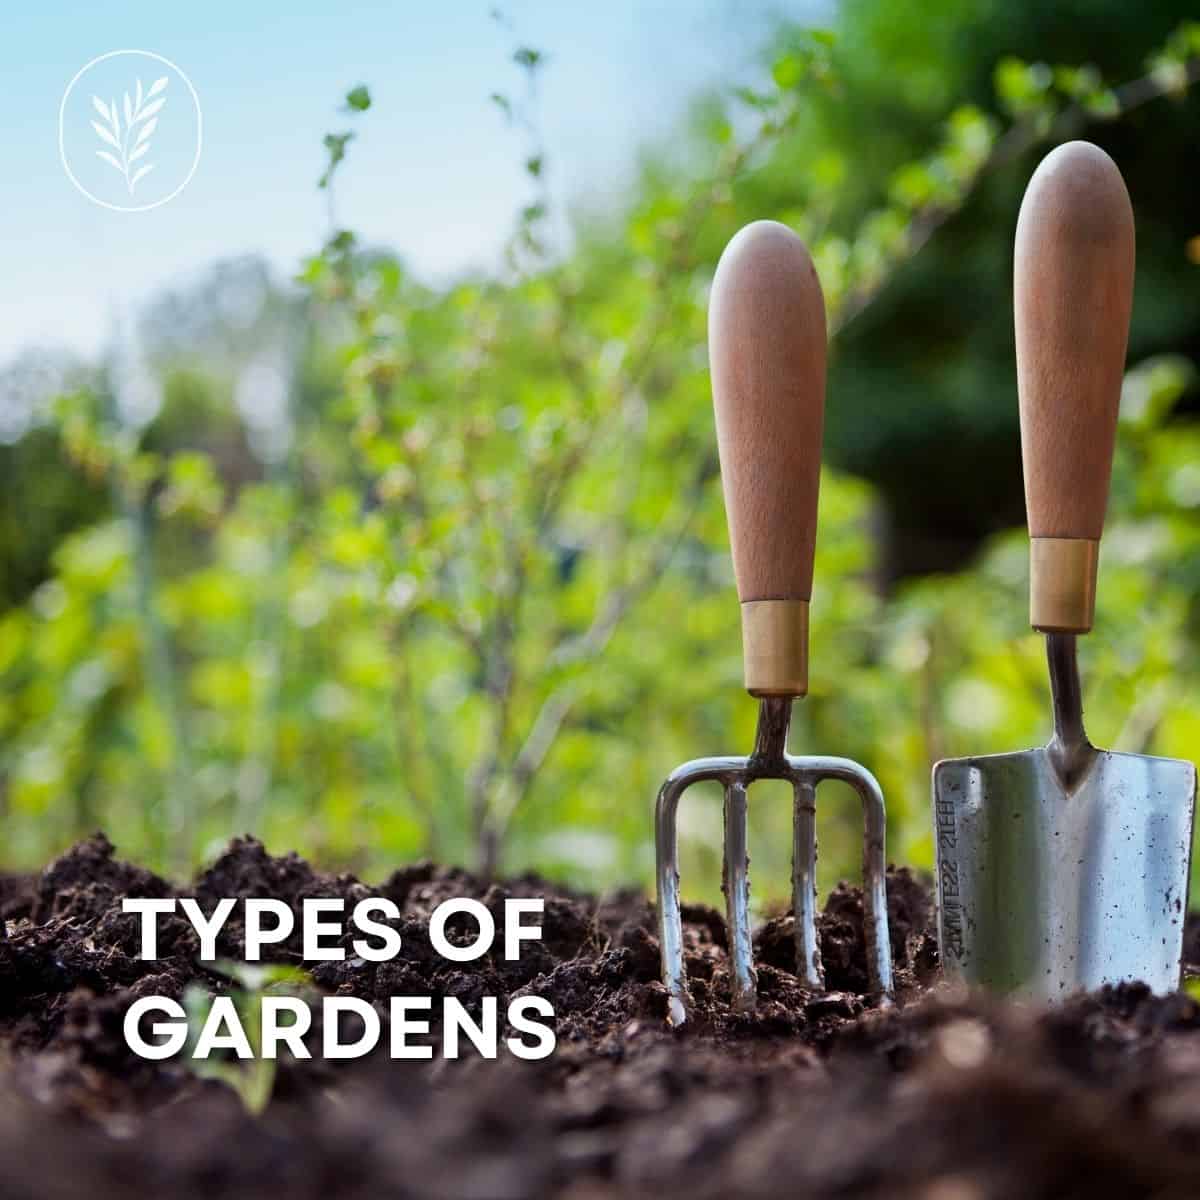 Types of gardens via @home4theharvest